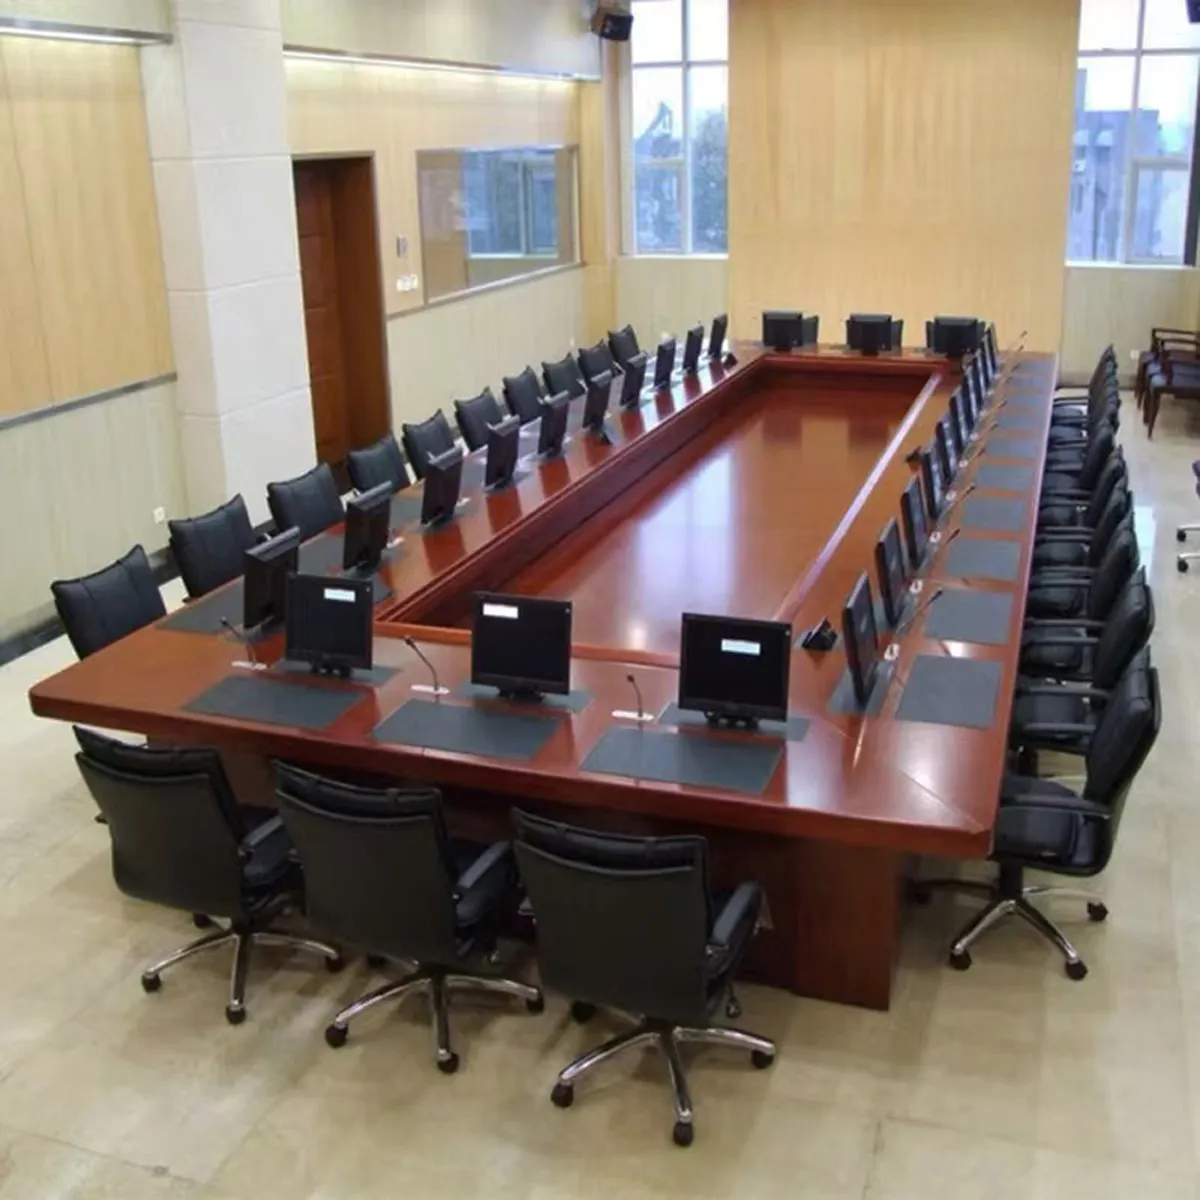 الراقية كبير حجم 20 شخص الحديثة خشبية طاولة اجتماعات المؤتمر لل حكومة